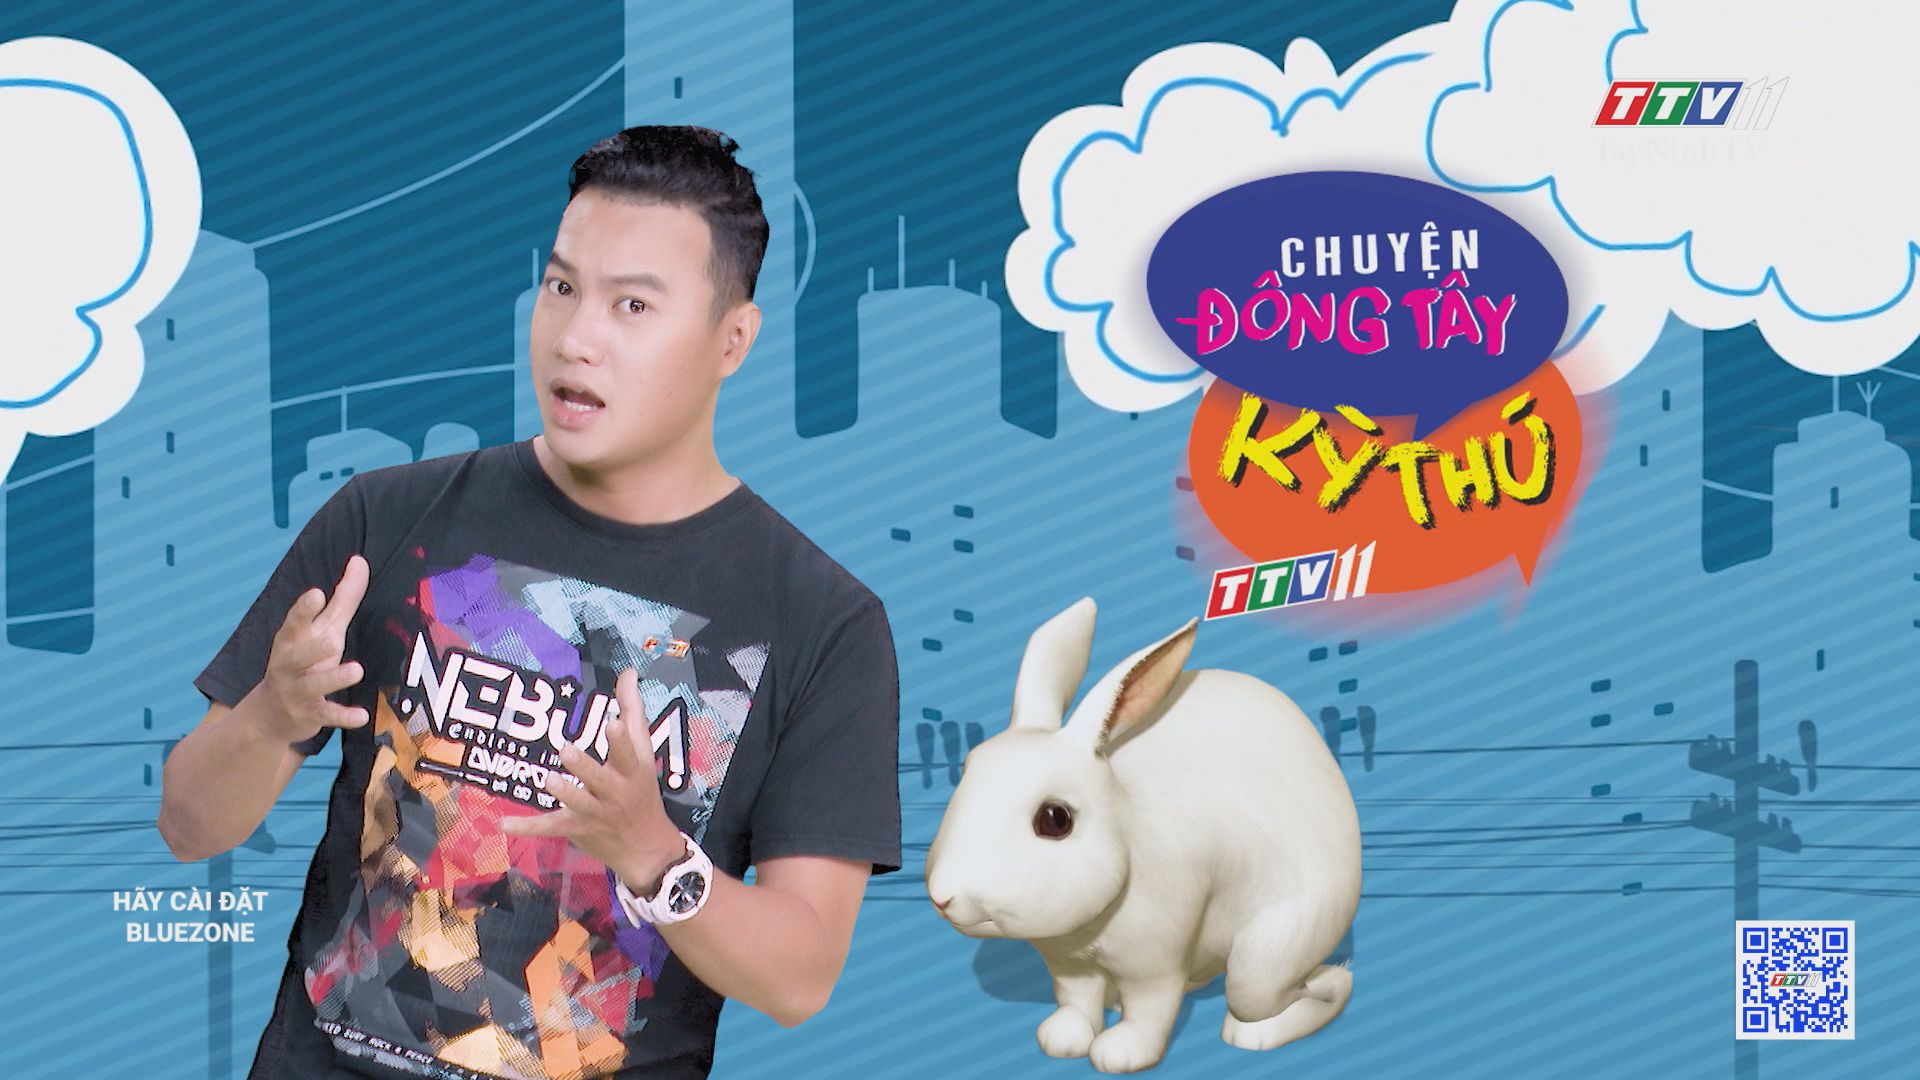 Thú vị cuộc thi thỏ nhảy rào | CHUYỆN ĐÔNG TÂY KỲ THÚ | TayNinhTV